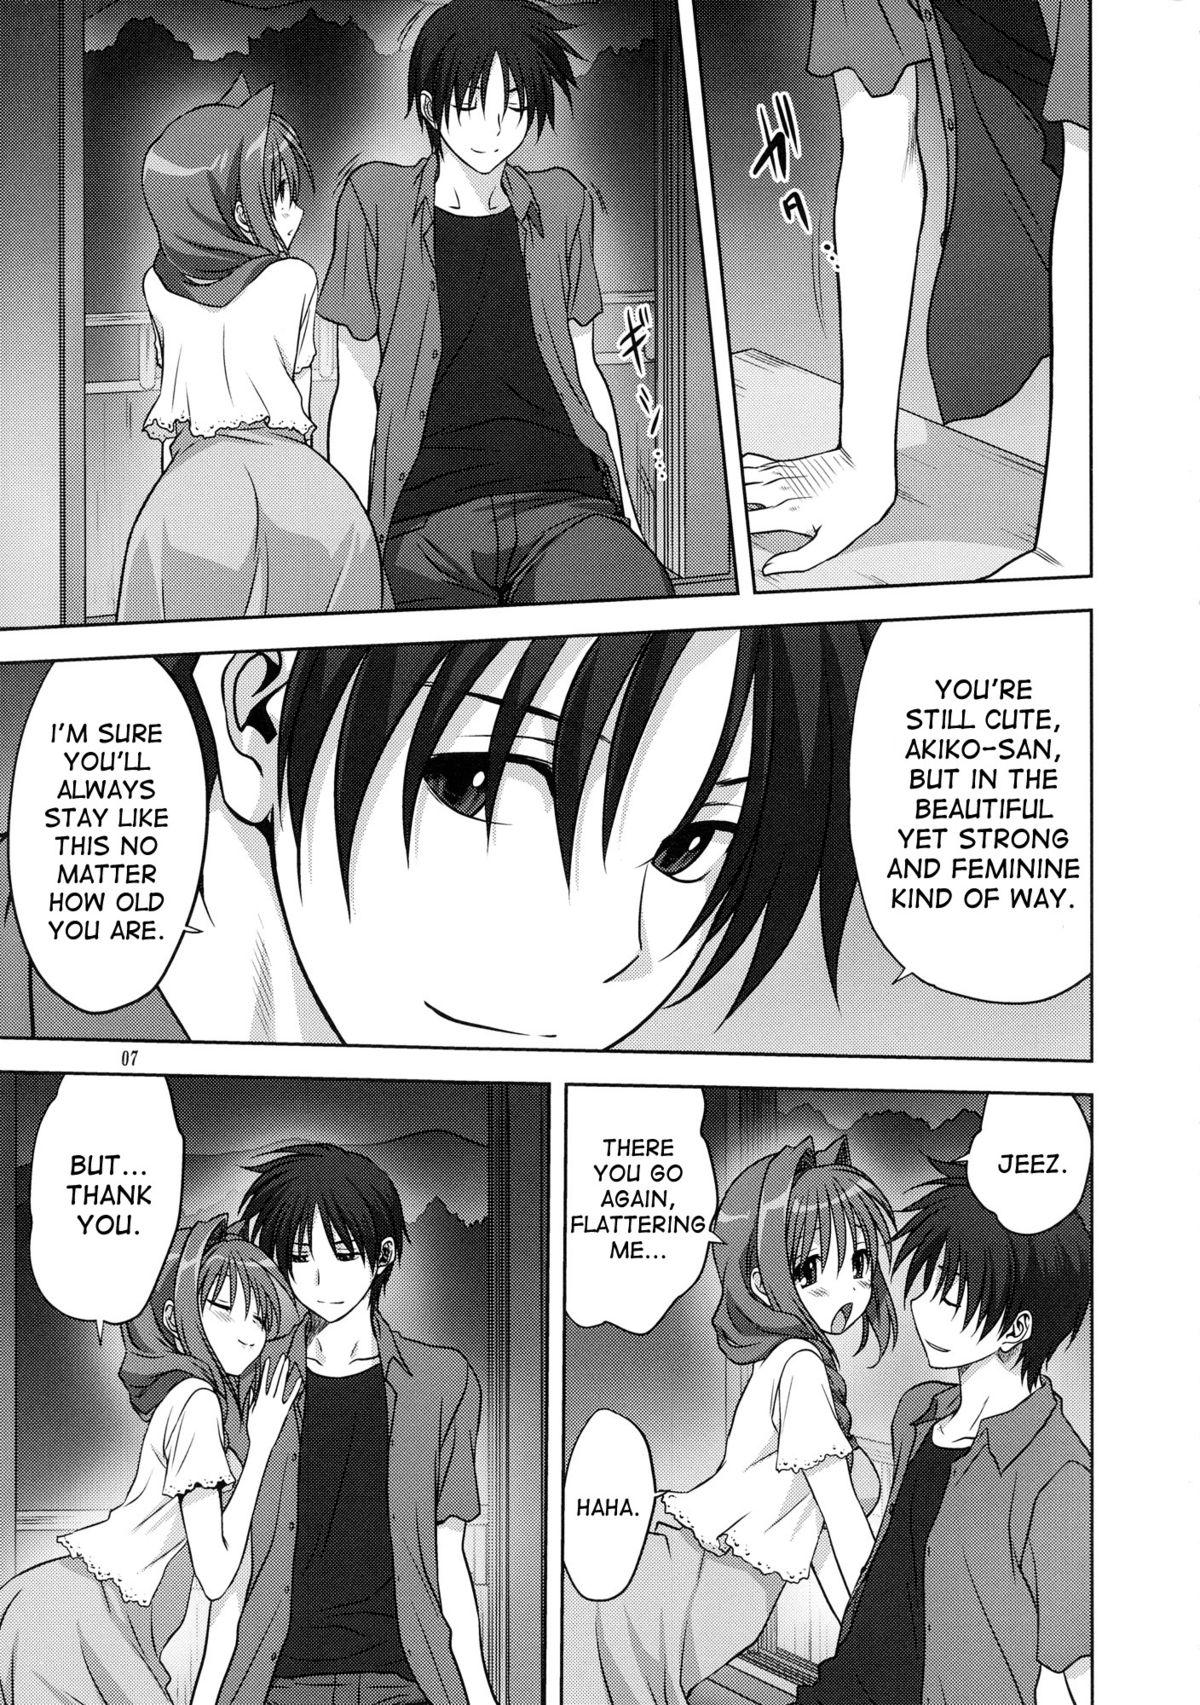 Gay Akiko-san to Issho 12 - Kanon Sexo - Page 7